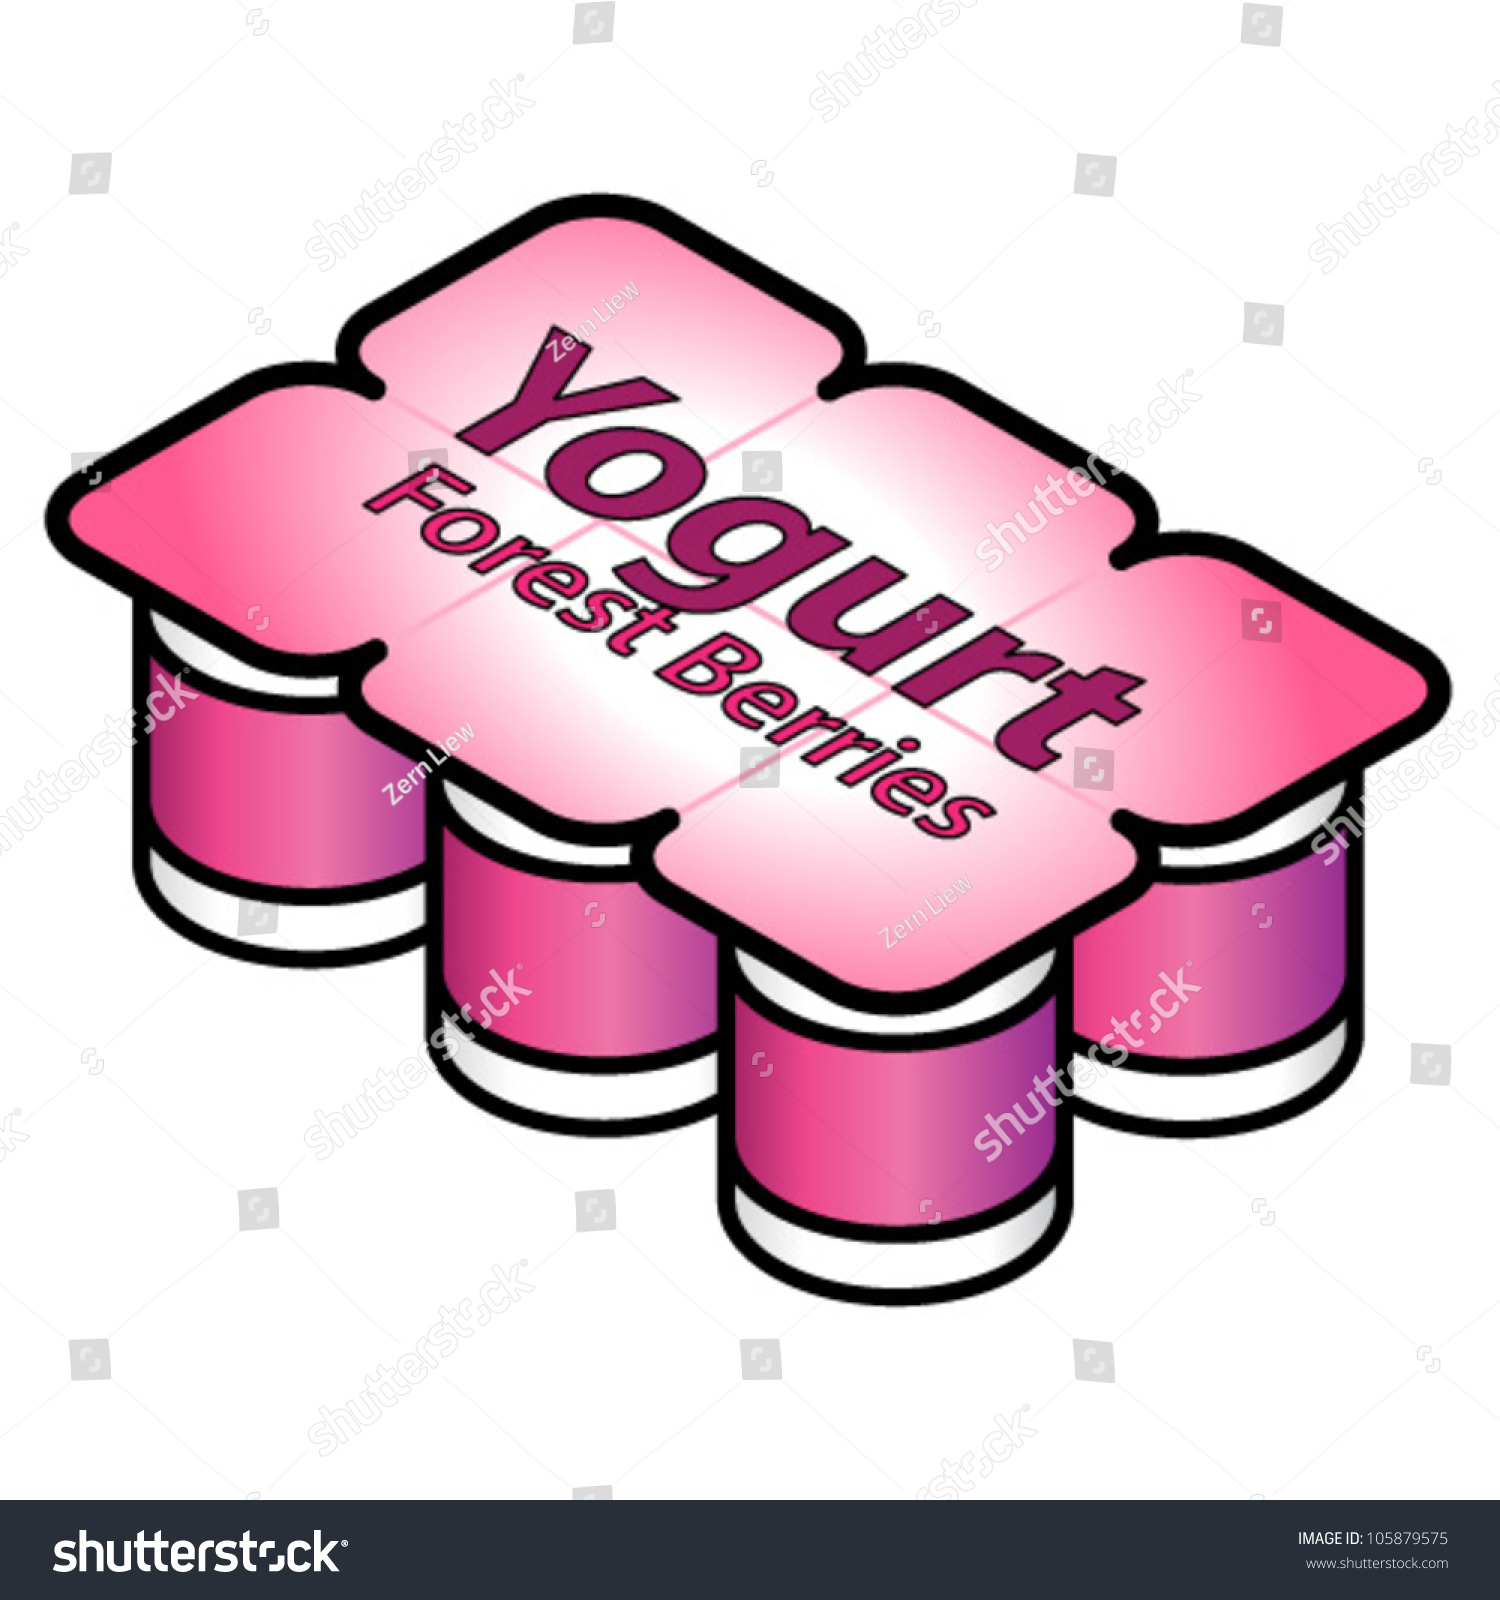 clipart of yogurt - photo #50